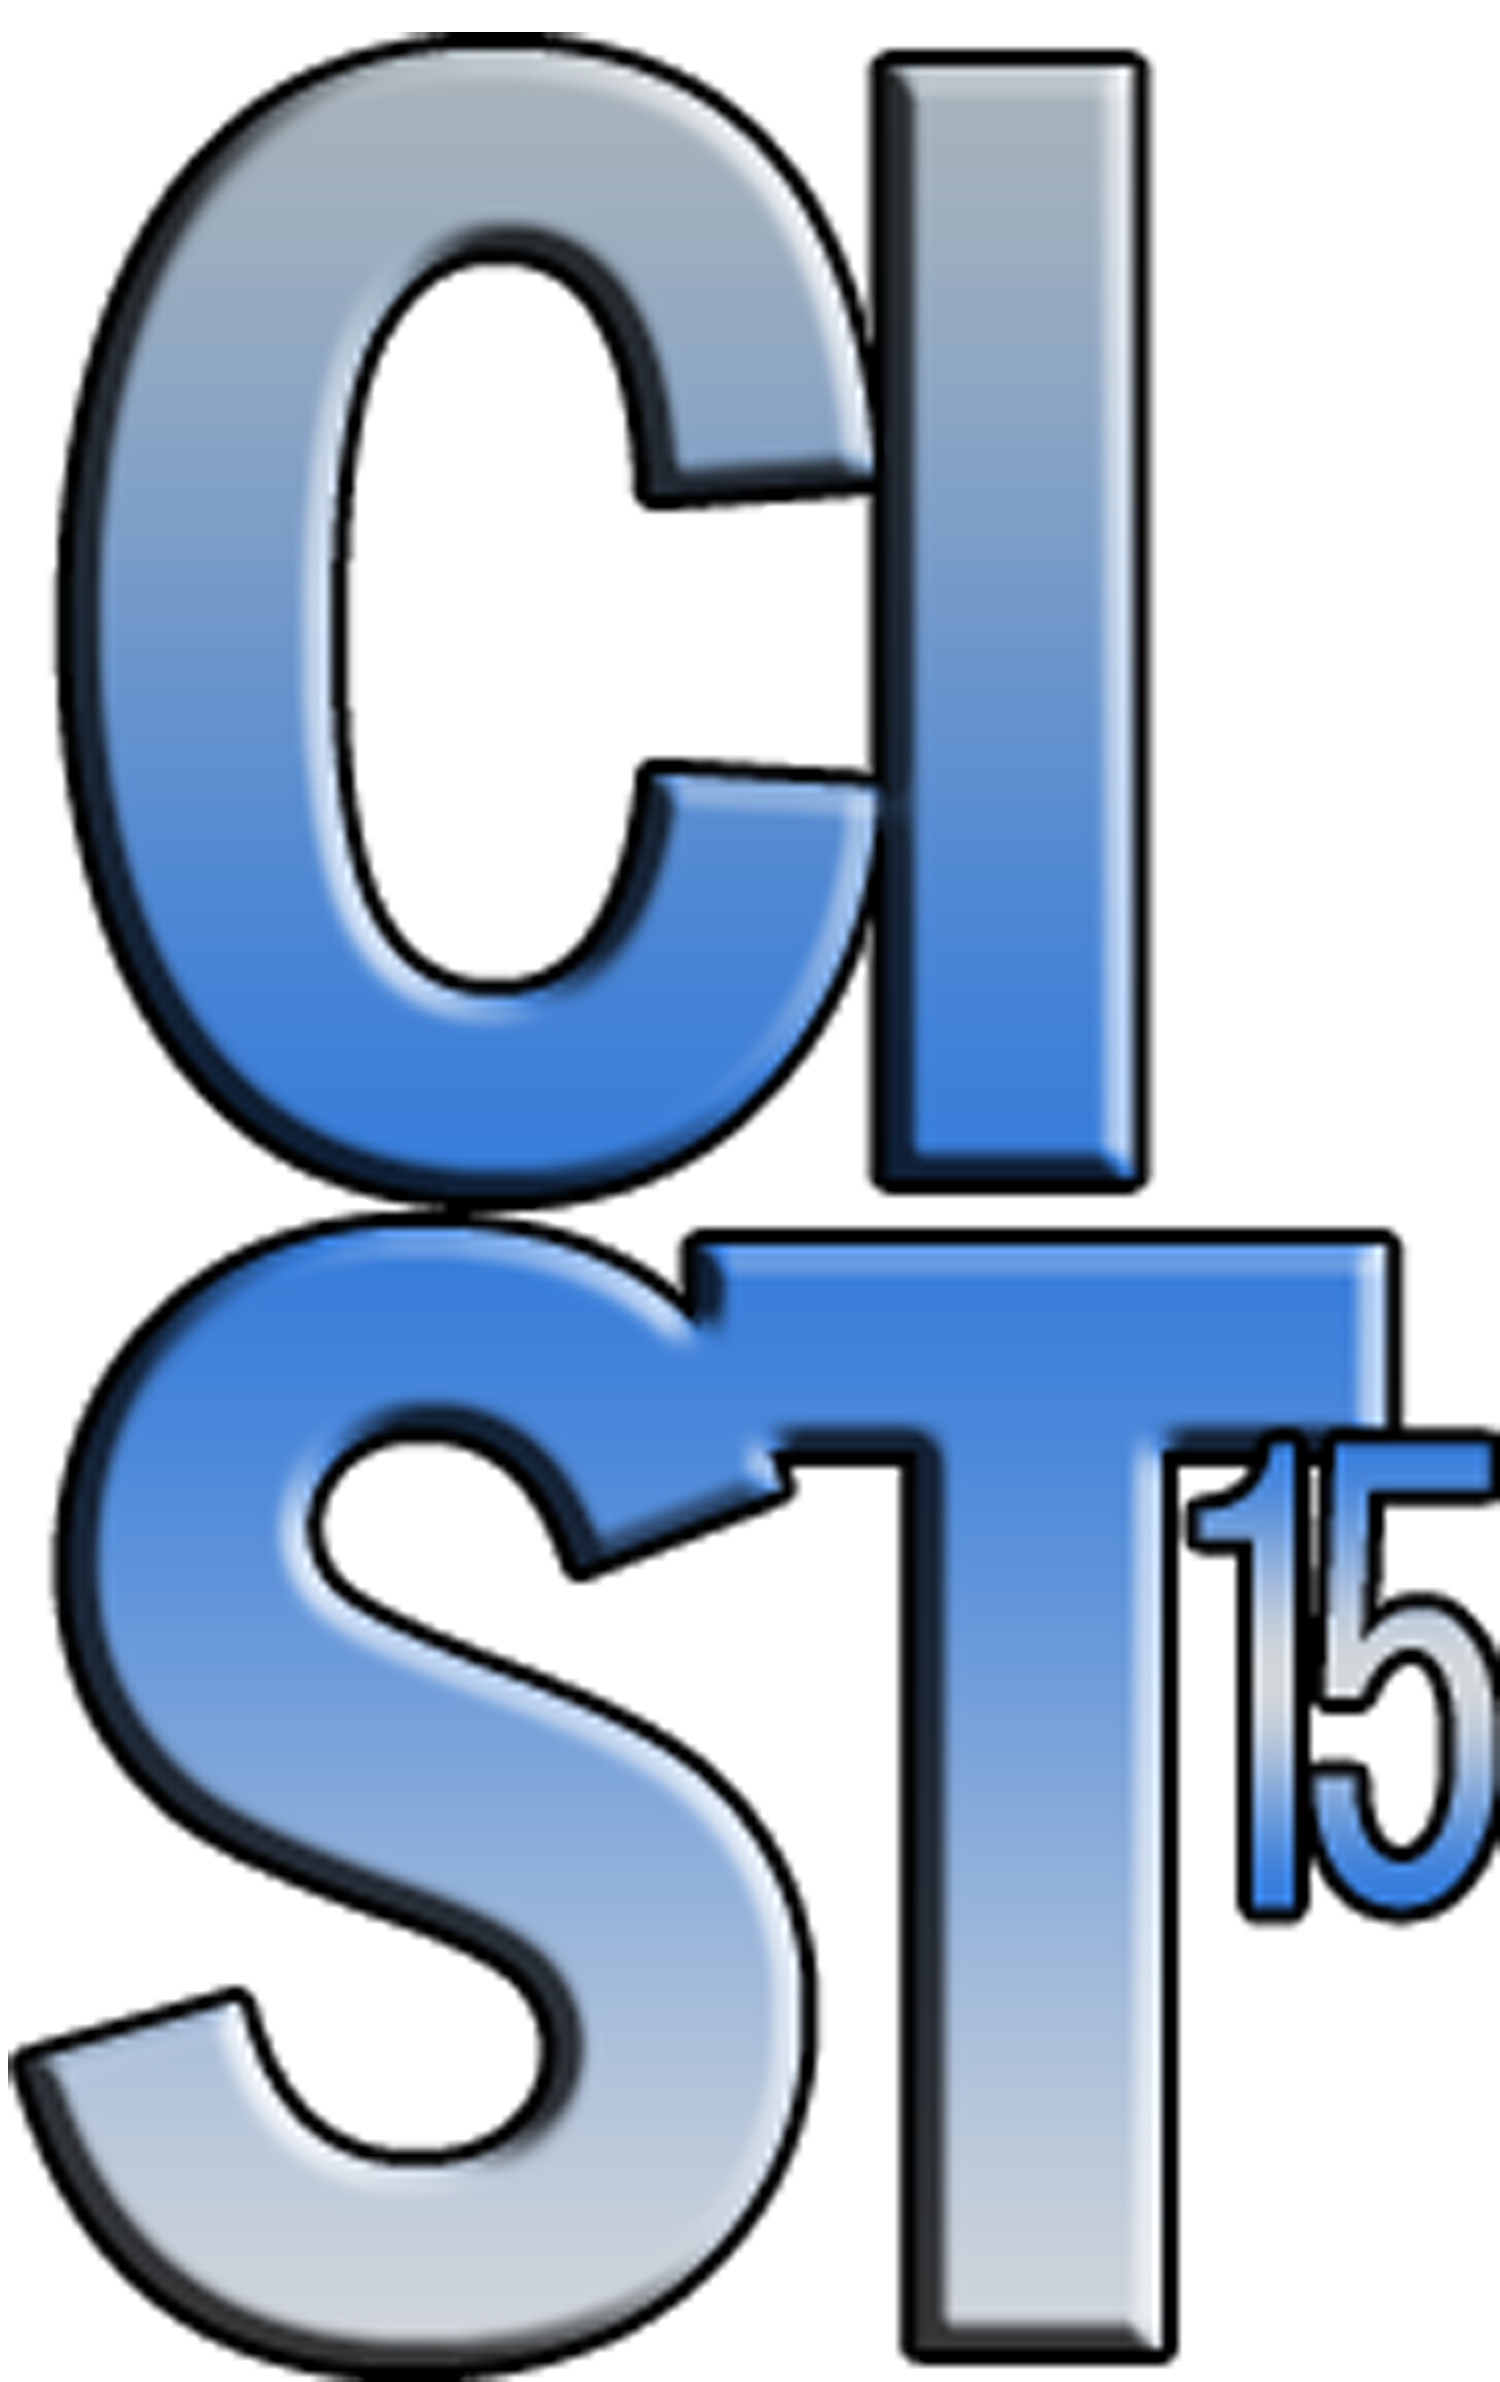 CIST'15 Conference Proceedings Keynote Speakers